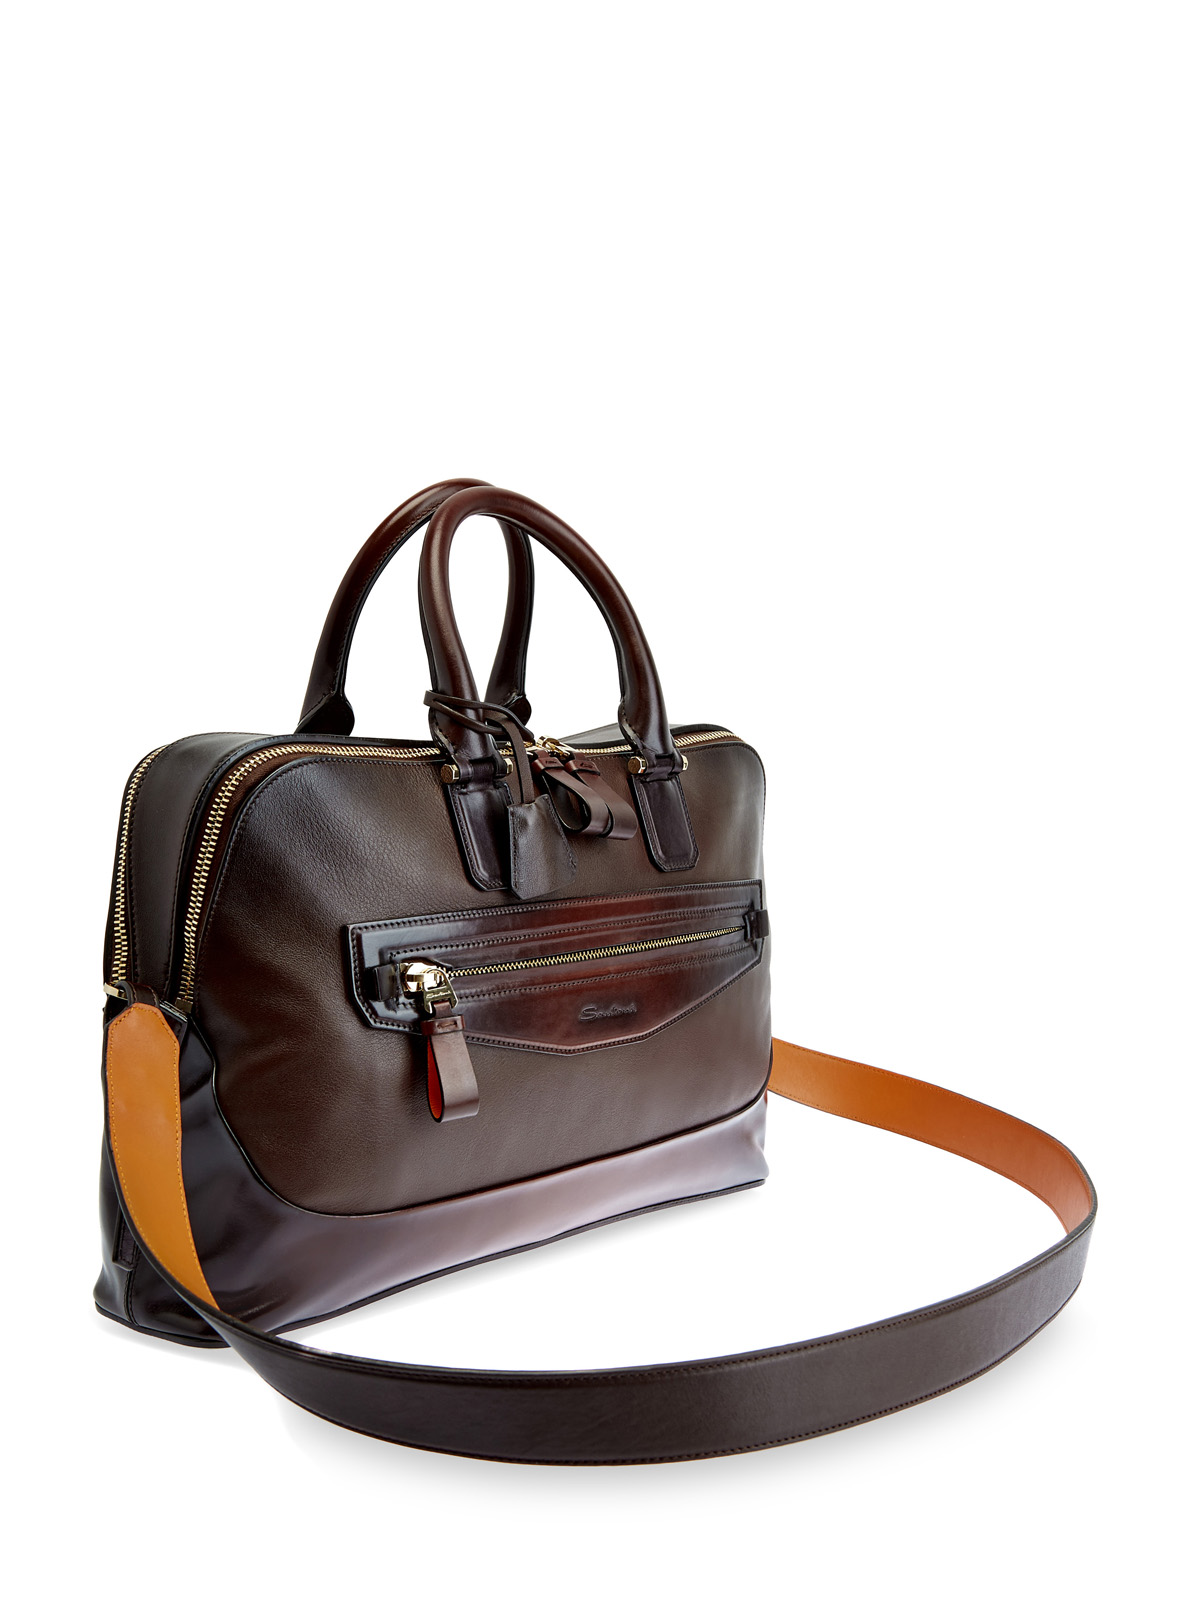 Дорожная сумка ручной работы с эффектом патины SANTONI, цвет коричневый, размер 41;41.5;42.5;43;43.5;44;44.5 - фото 3